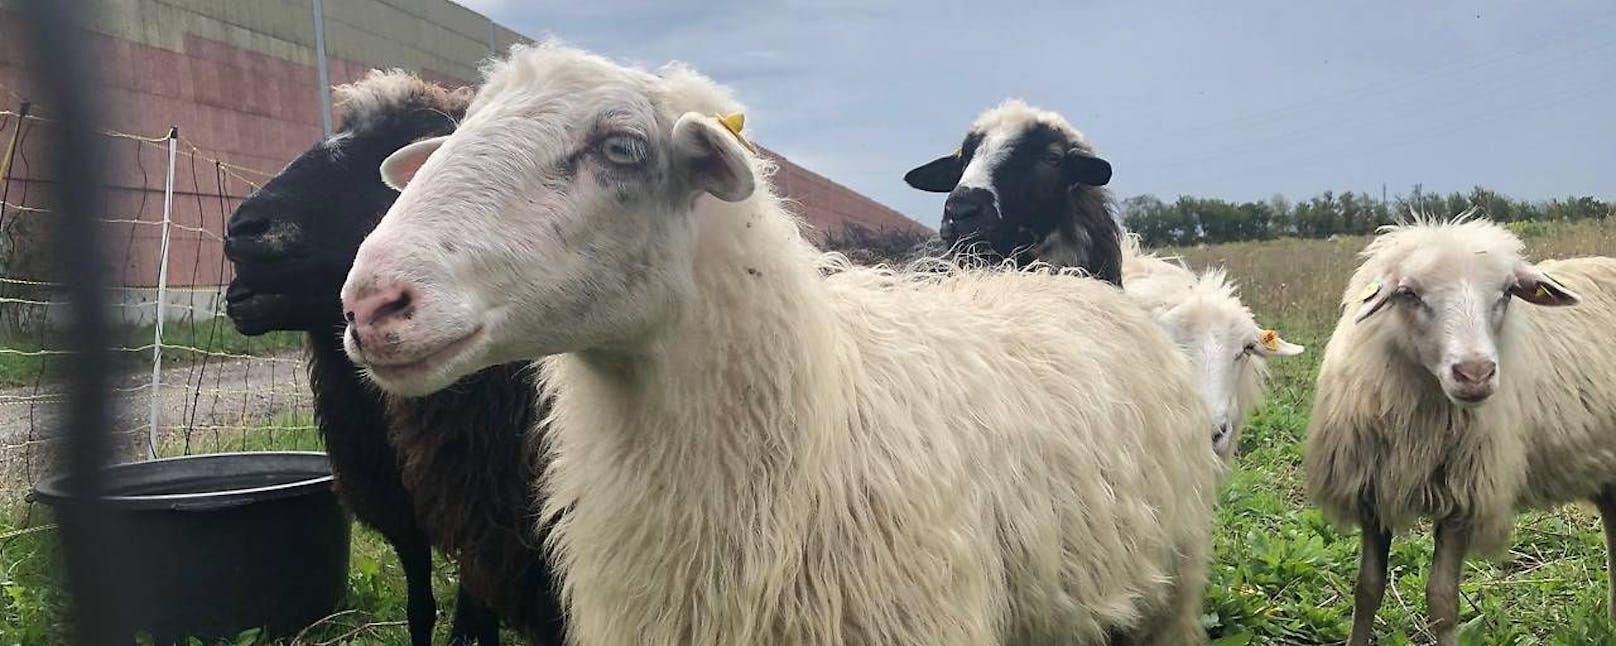 Berühmte Mäh-Schafe von Donauinsel suchen Gnadenplätze